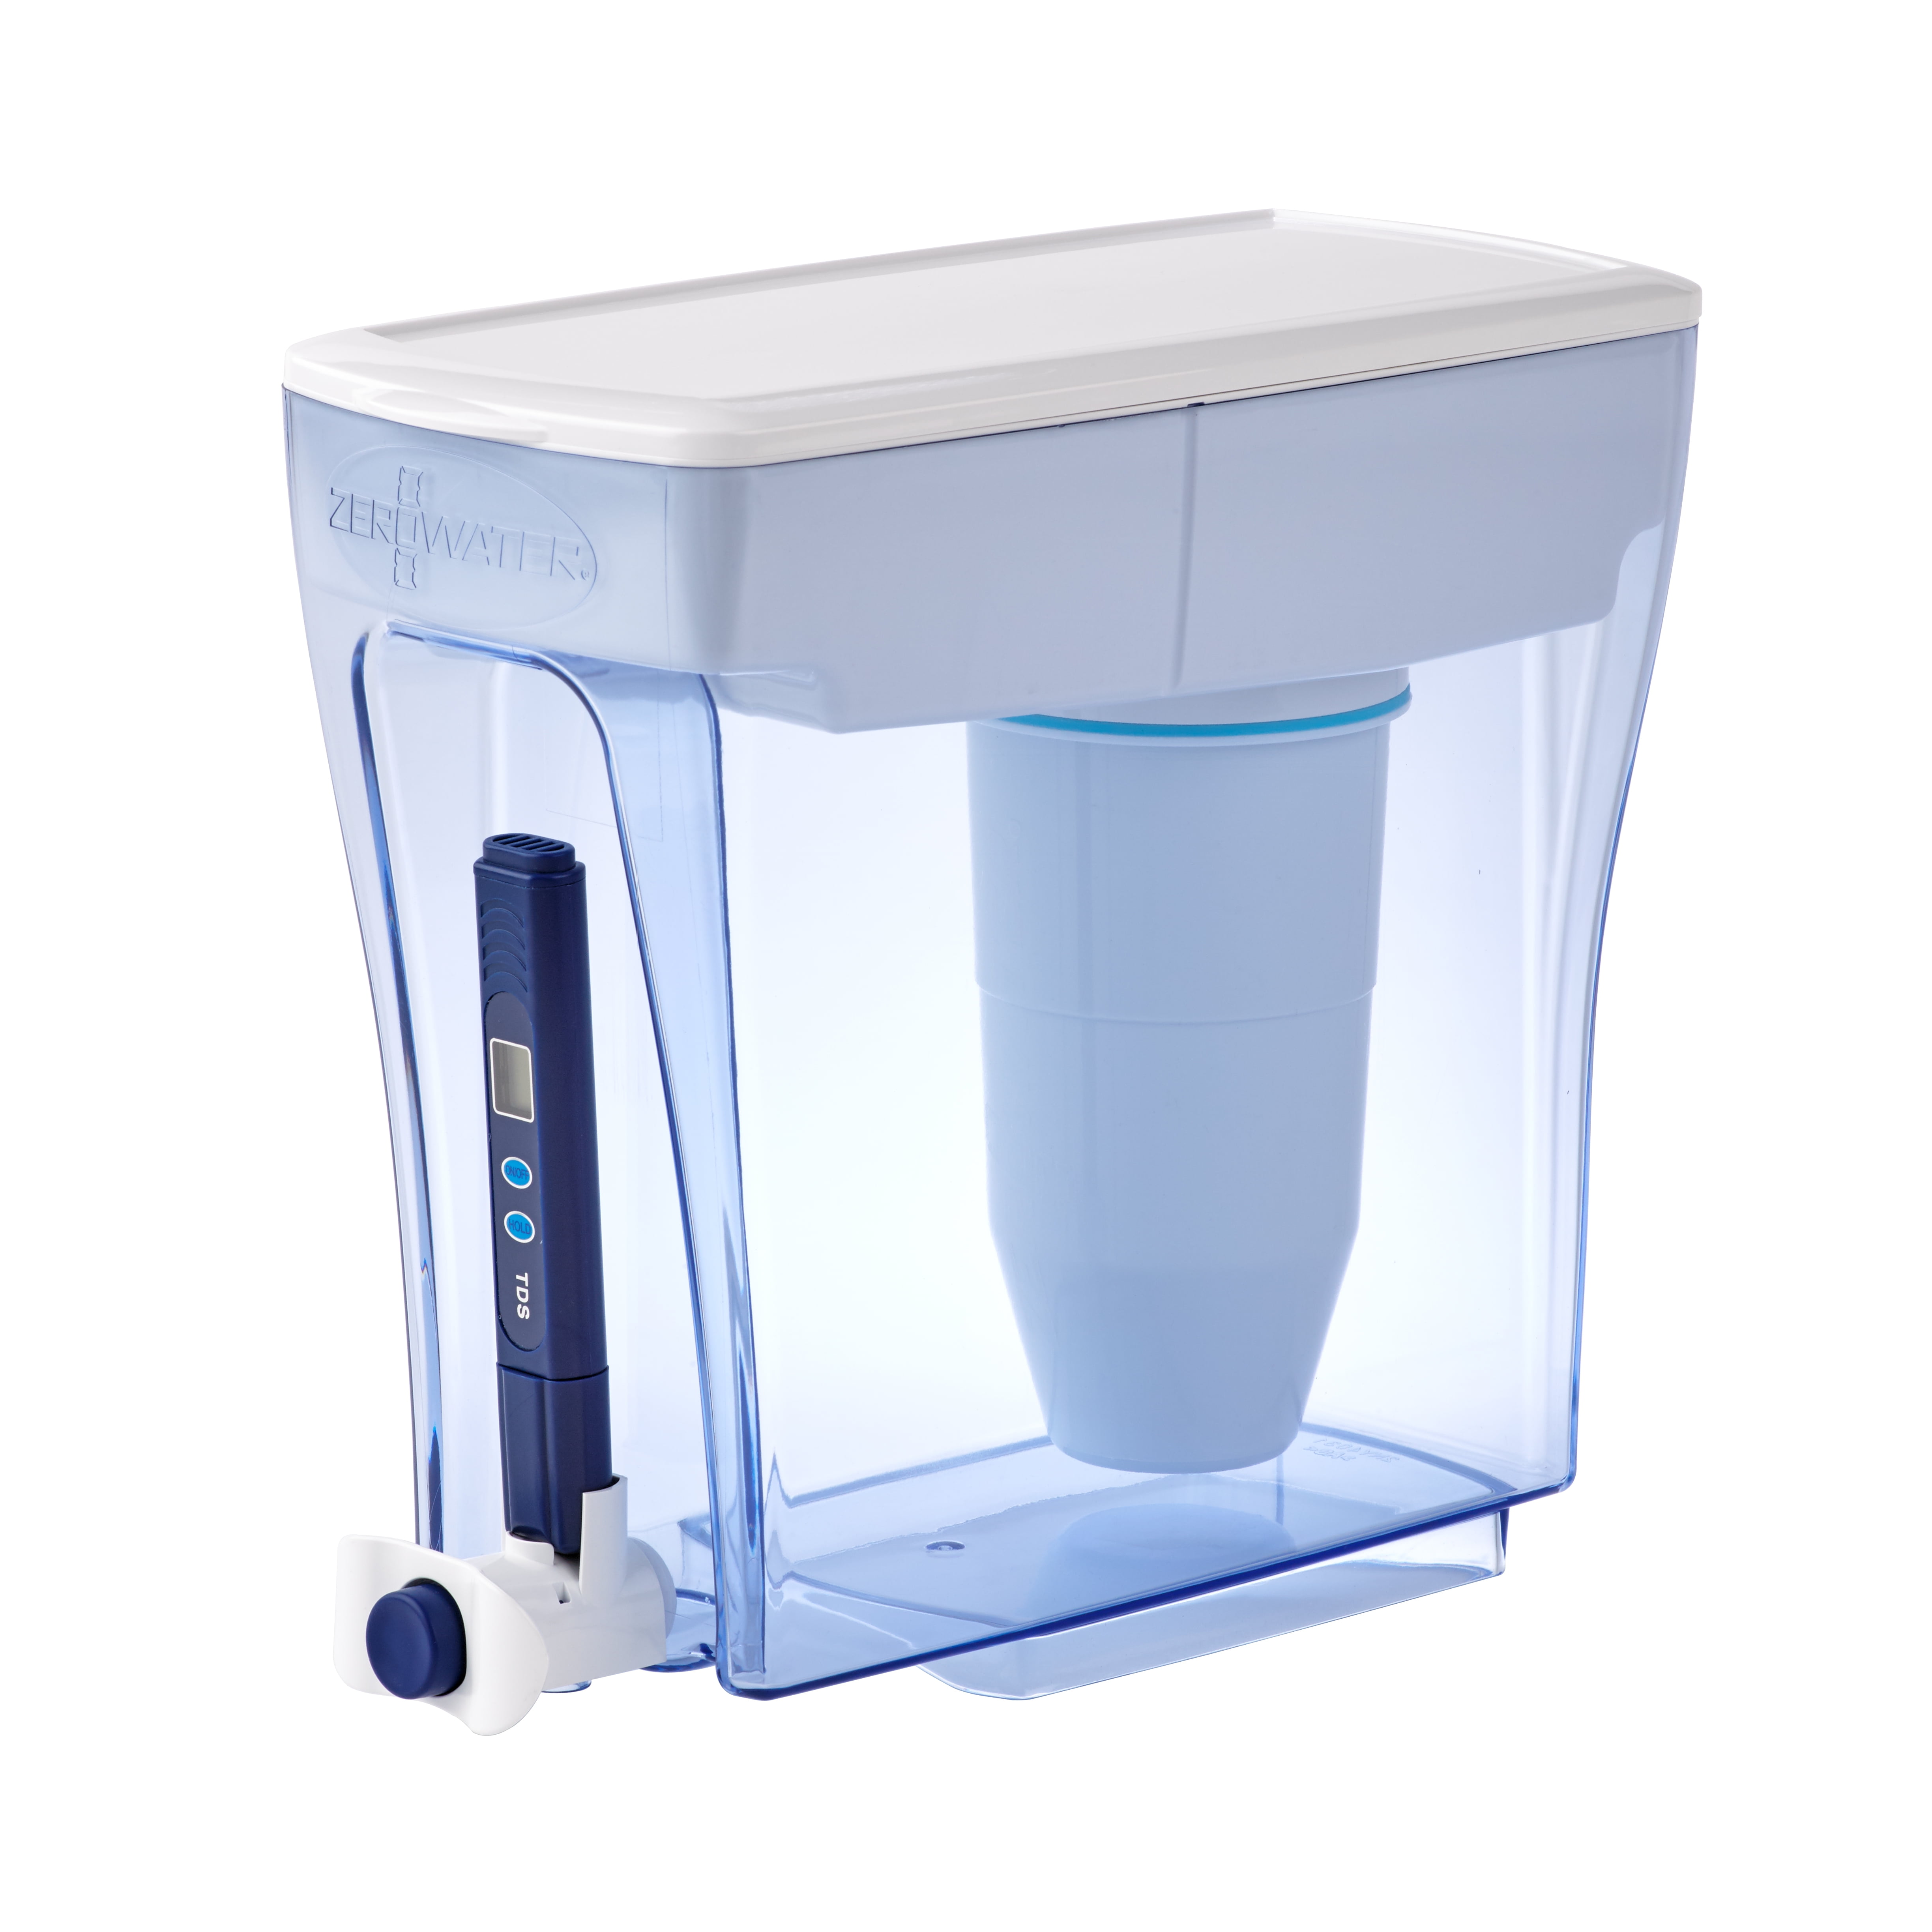 Portable Water Filter Kettle Supplier - Gooten